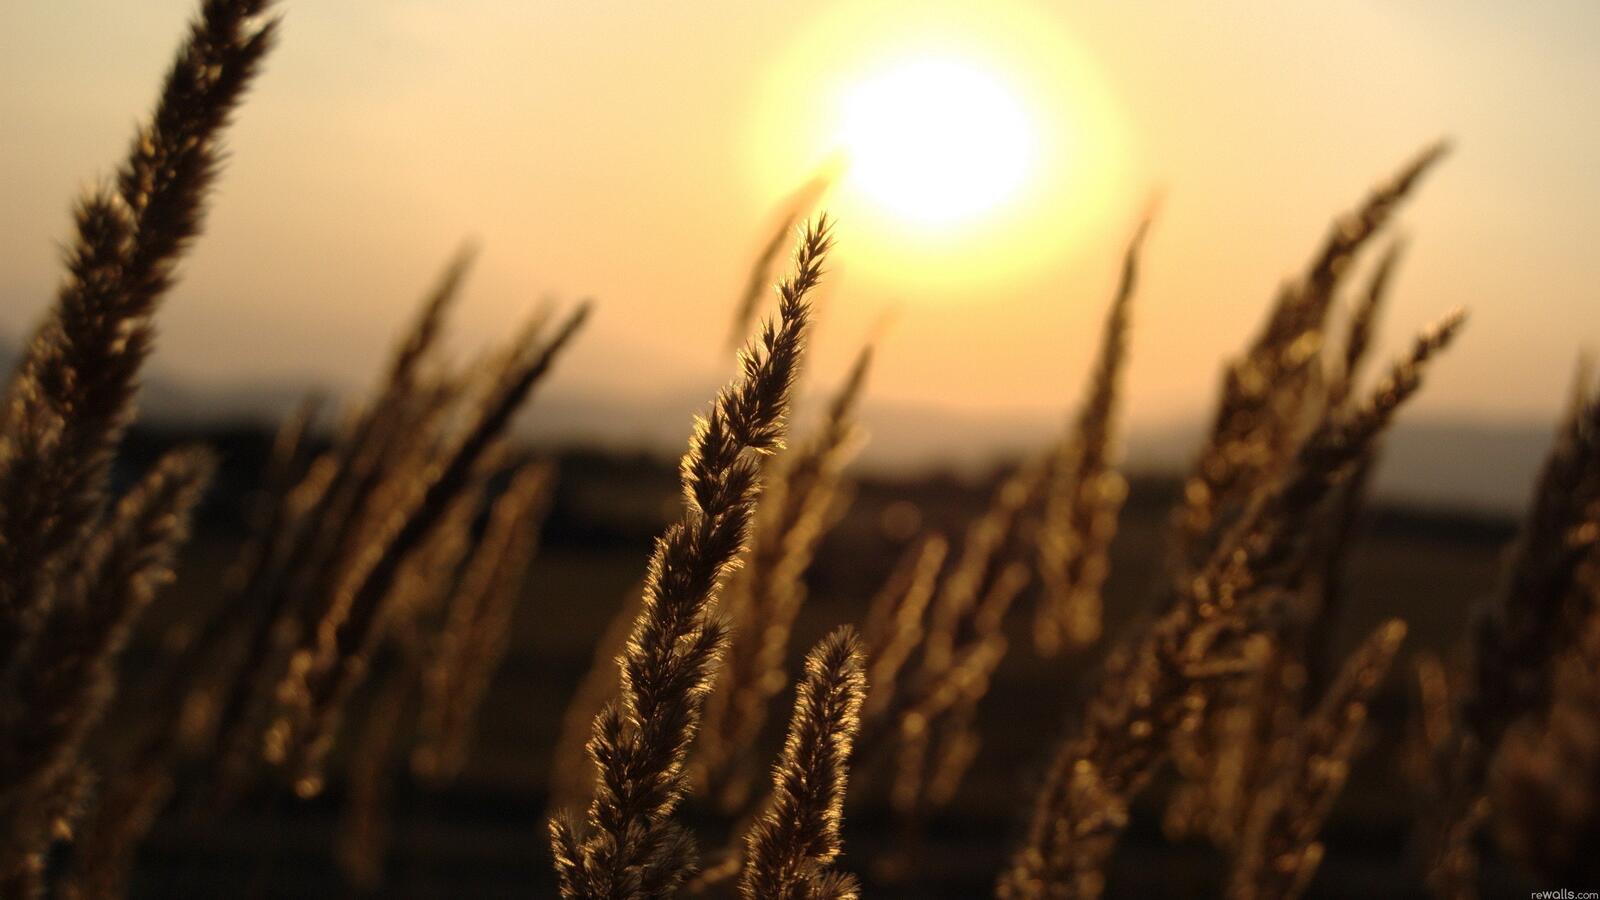 Бесплатное фото Пшеница на закате дня